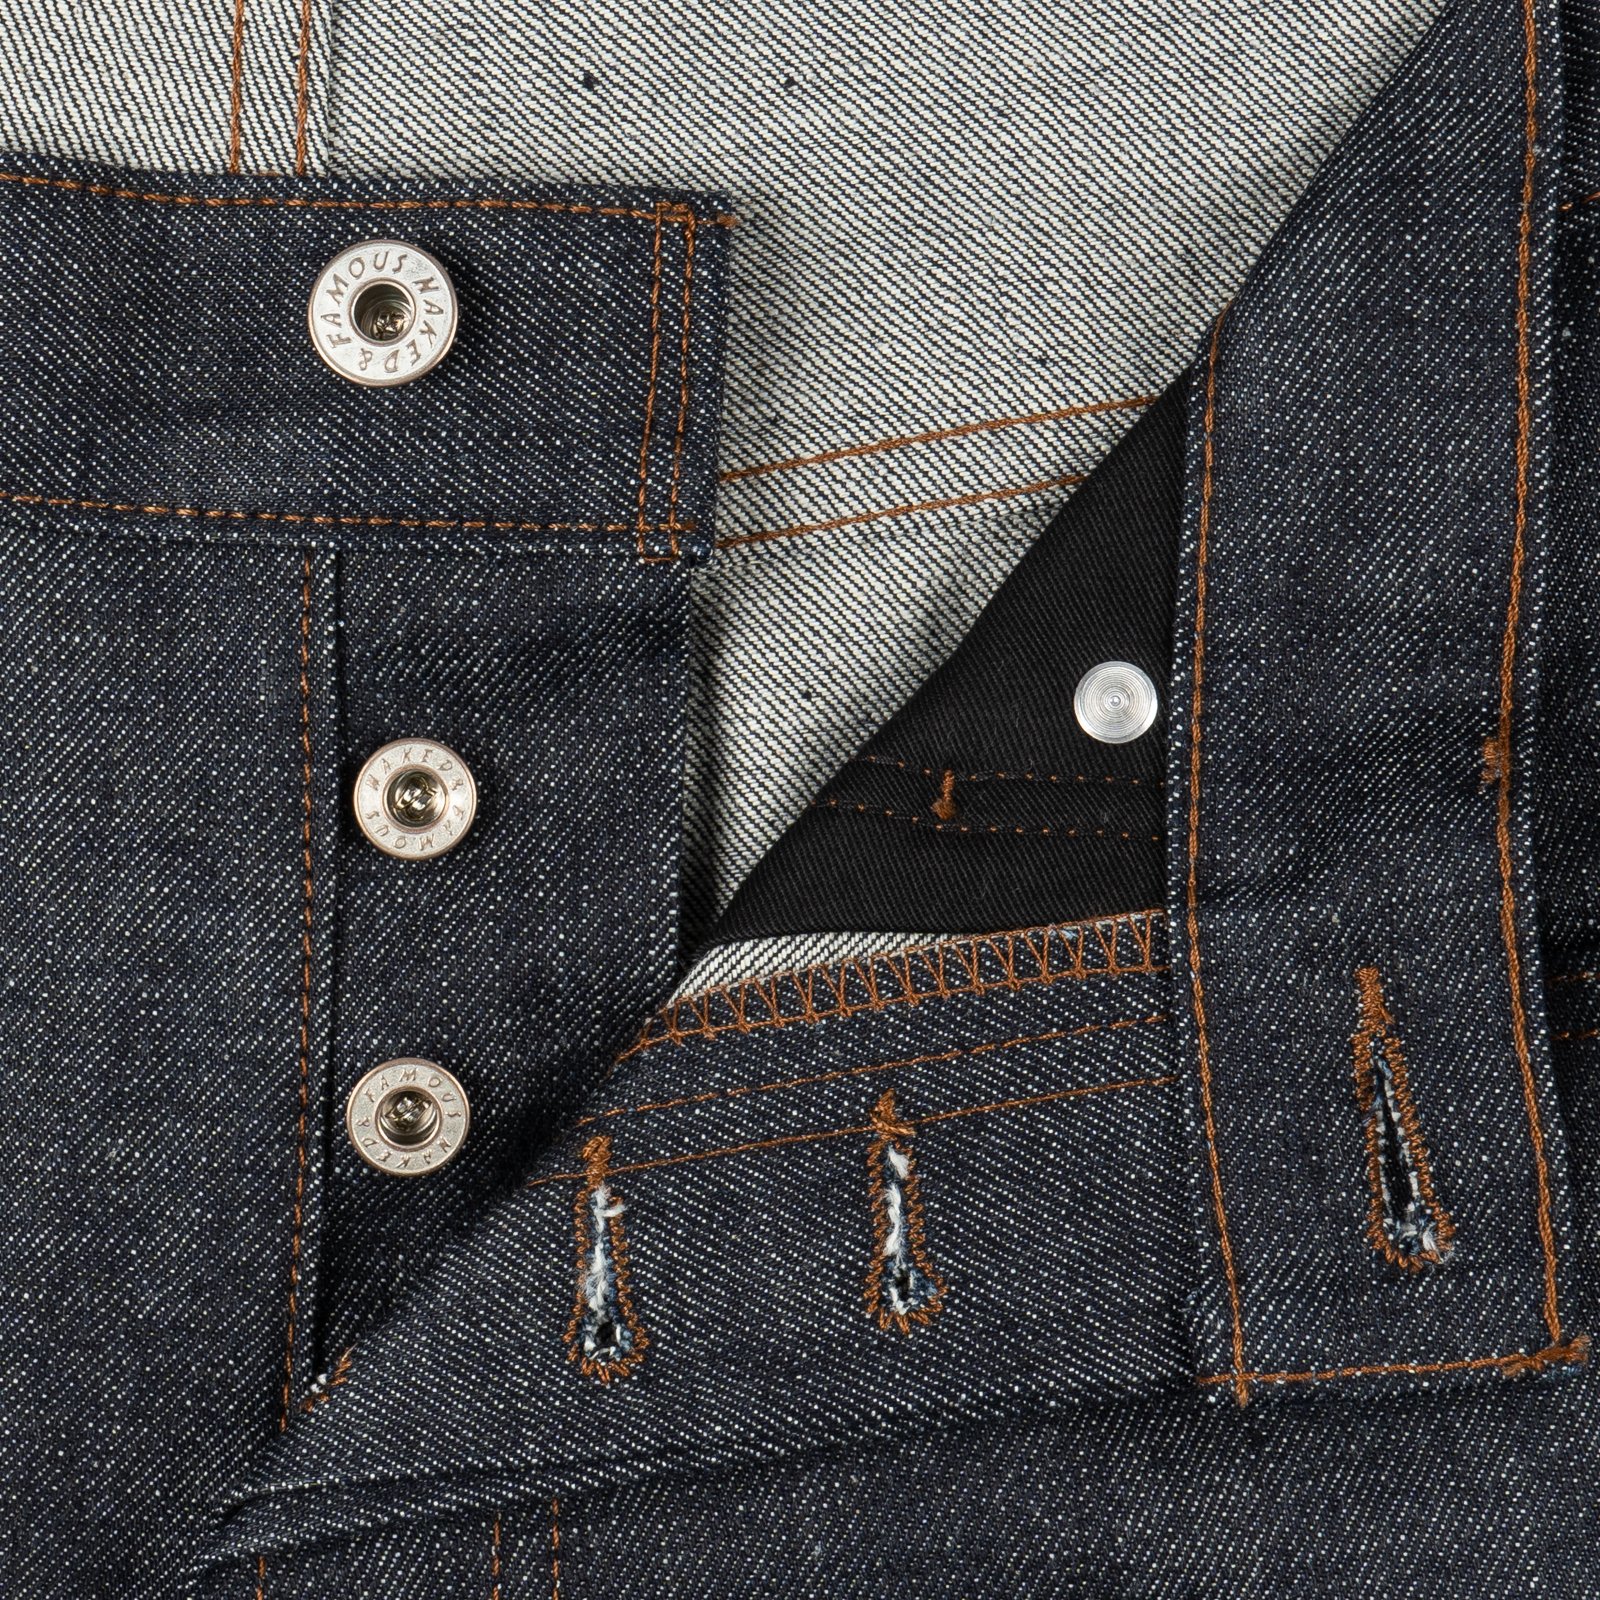  La Belle Province Selvedge jeans - button fly 